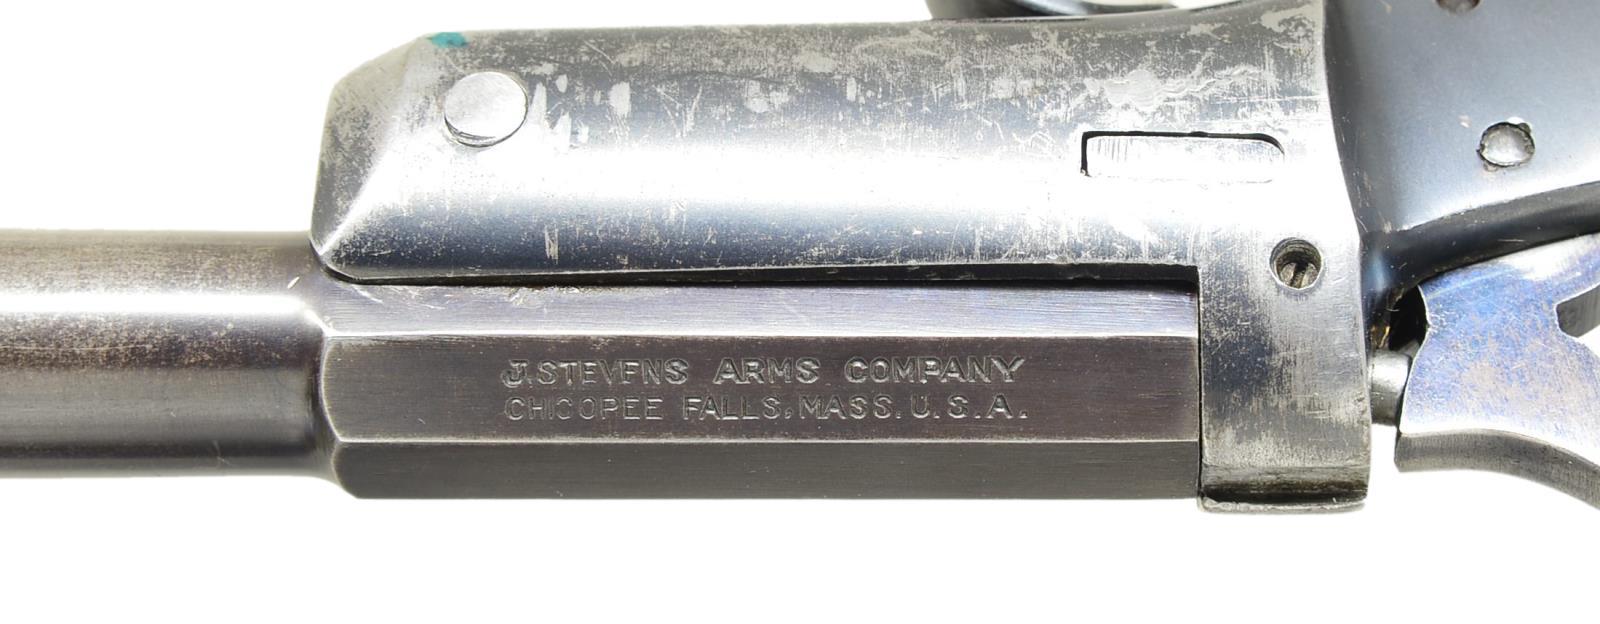 J. STEVENS ARMS CO. HANDY GUN AOW IN 410 & 22 LR.